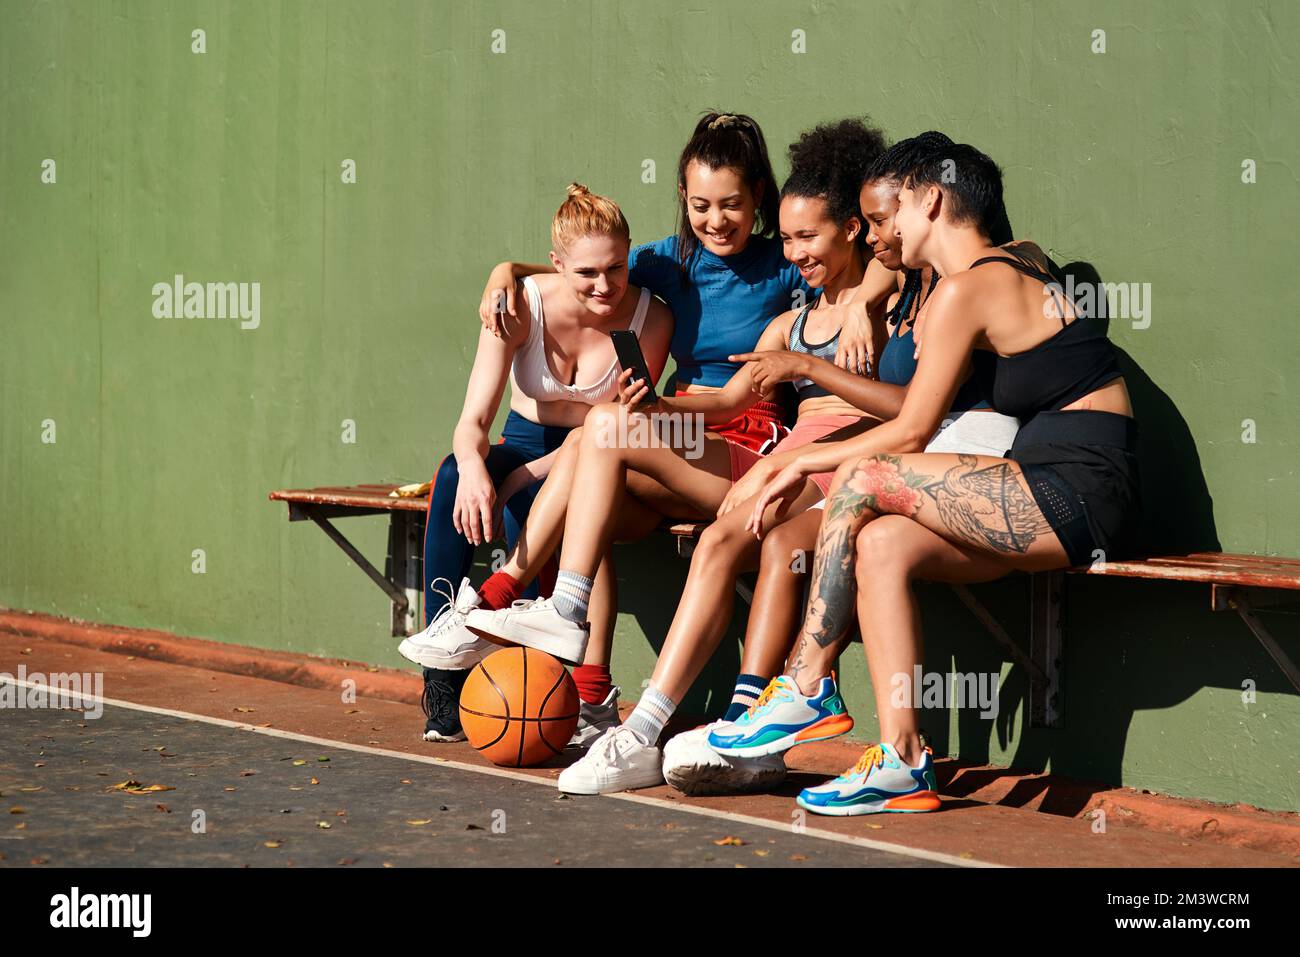 Lächeln. Eine vielfältige Gruppe von Sportlerinnen, die zusammen sitzen, nachdem sie Basketball gespielt und ein Handy angesehen haben. Stockfoto